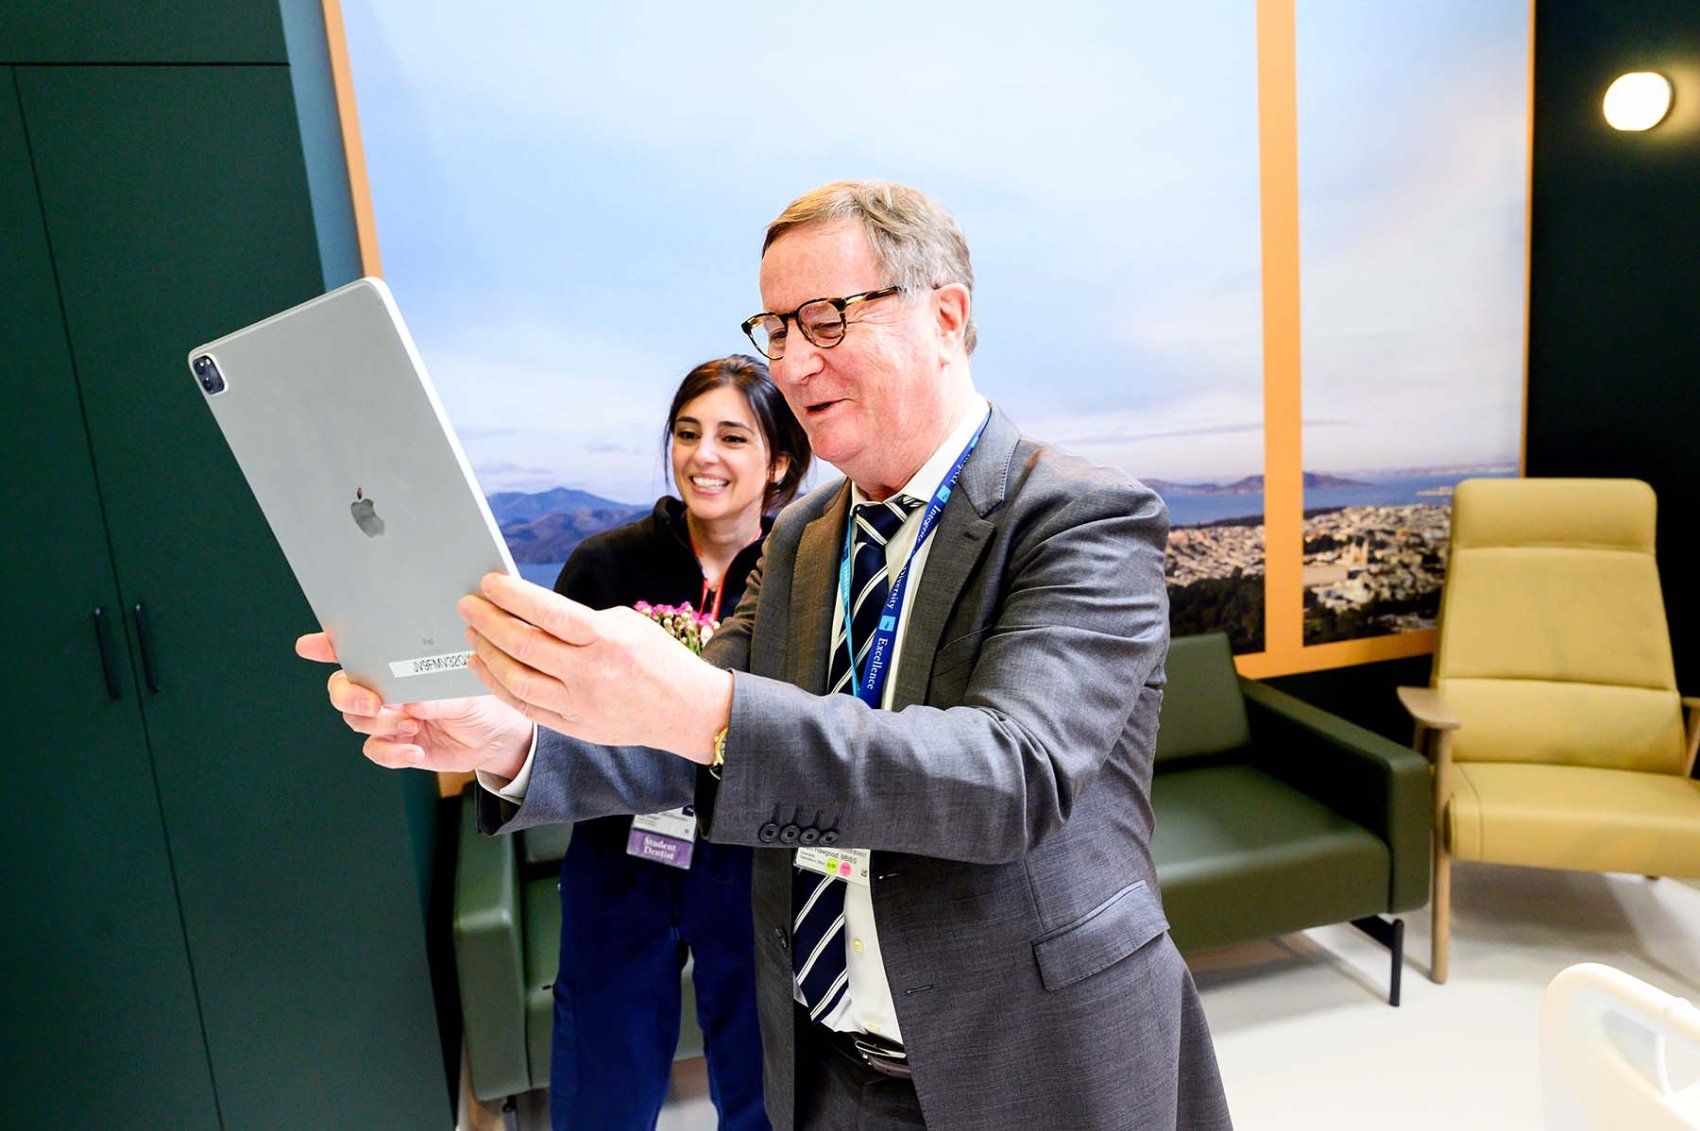 Le chancelier de l'UCSF, Sam Hawgood, MBBS, rit avec un participant alors qu'il brandit un iPad pour explorer une expérience de soins aux patients en réalité augmentée.